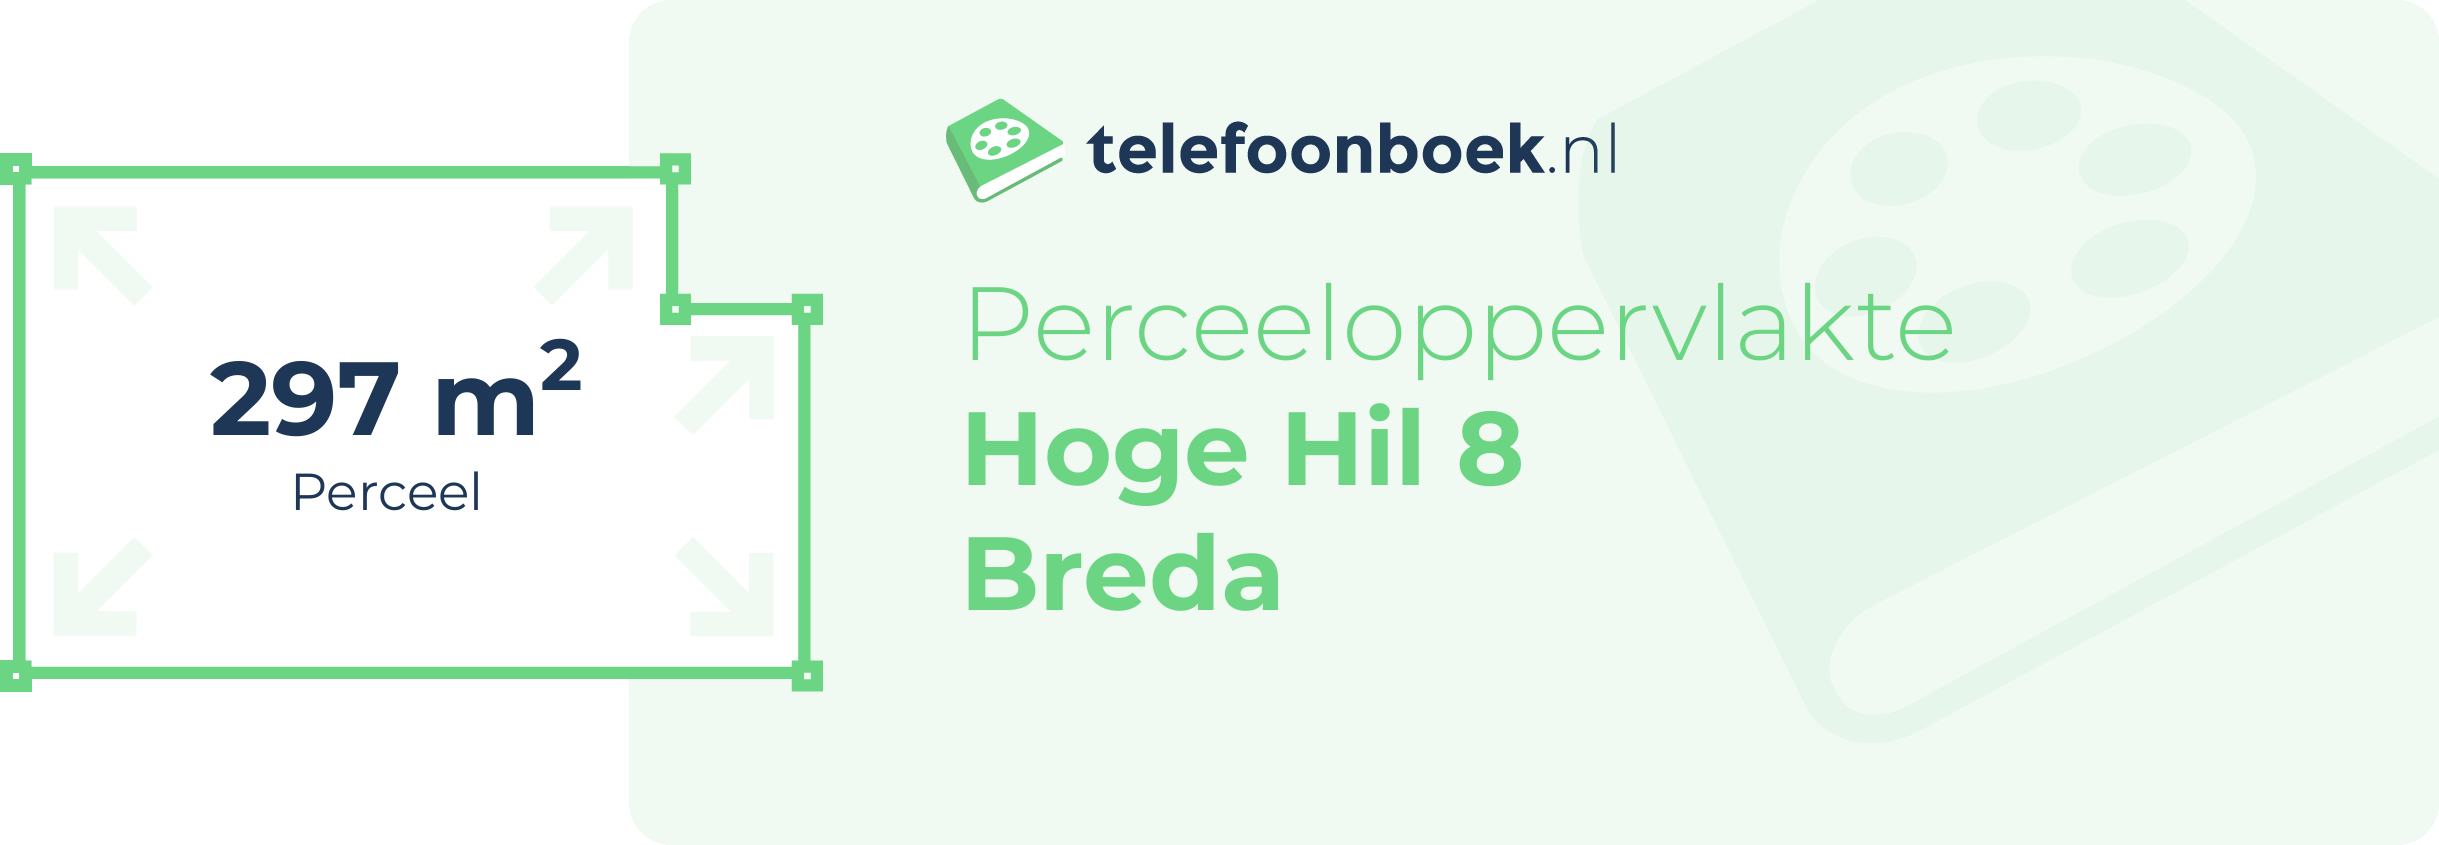 Perceeloppervlakte Hoge Hil 8 Breda